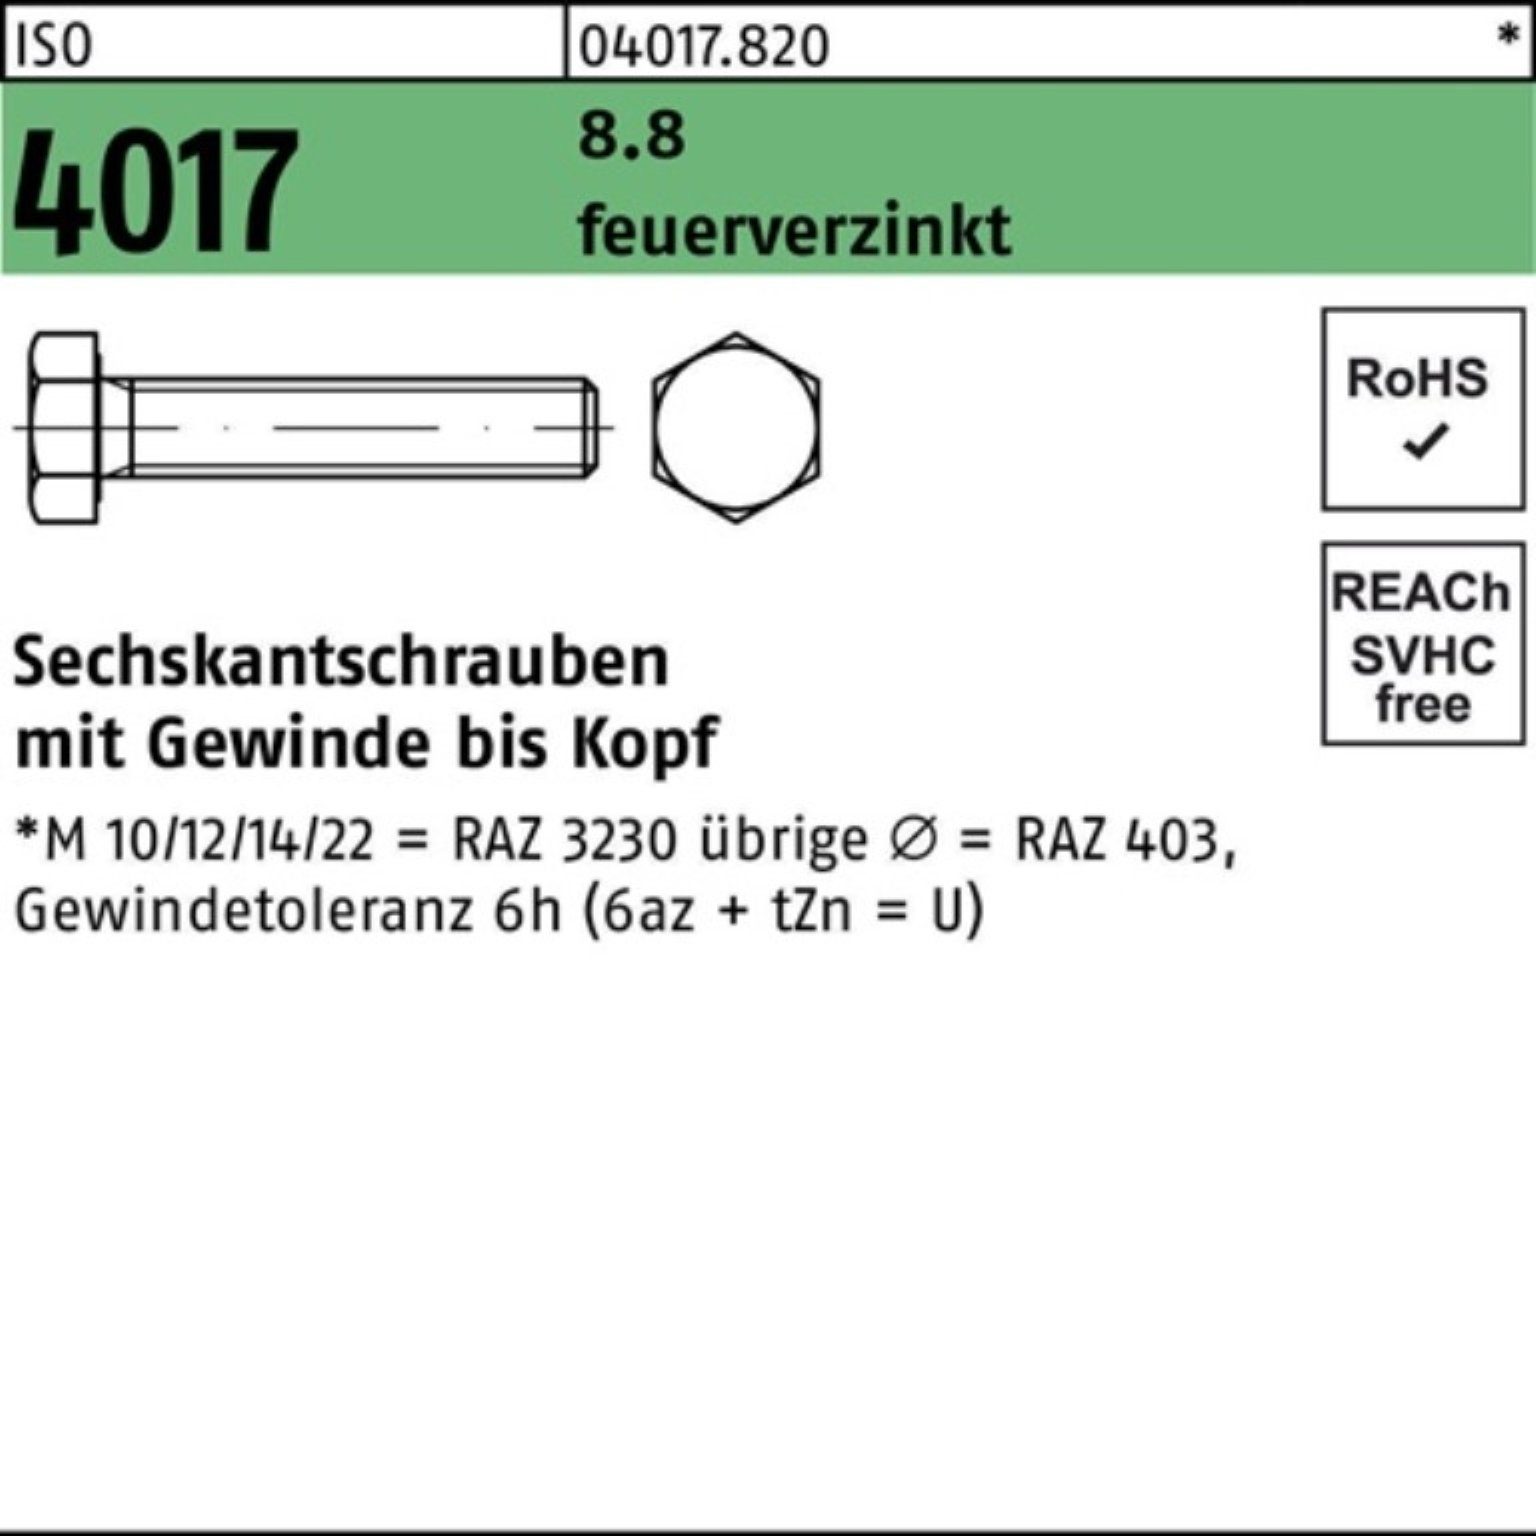 ISO Bufab Sechskantschraube 200er M8x 4017 St 8.8 feuerverz. VG Sechskantschraube 200 60 Pack